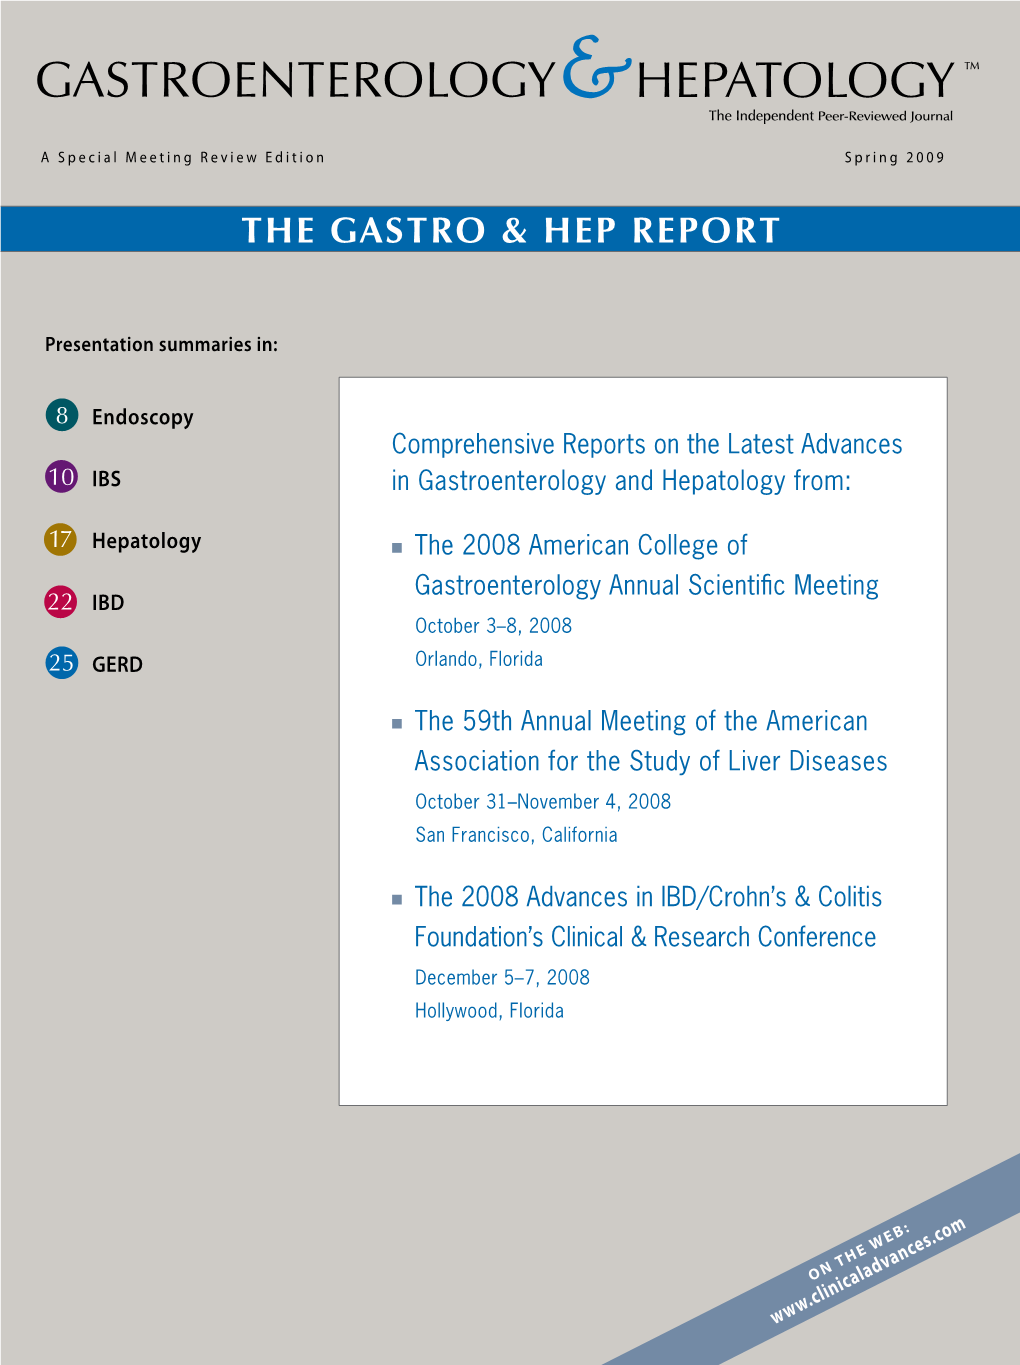 The Gastro & Hep Report